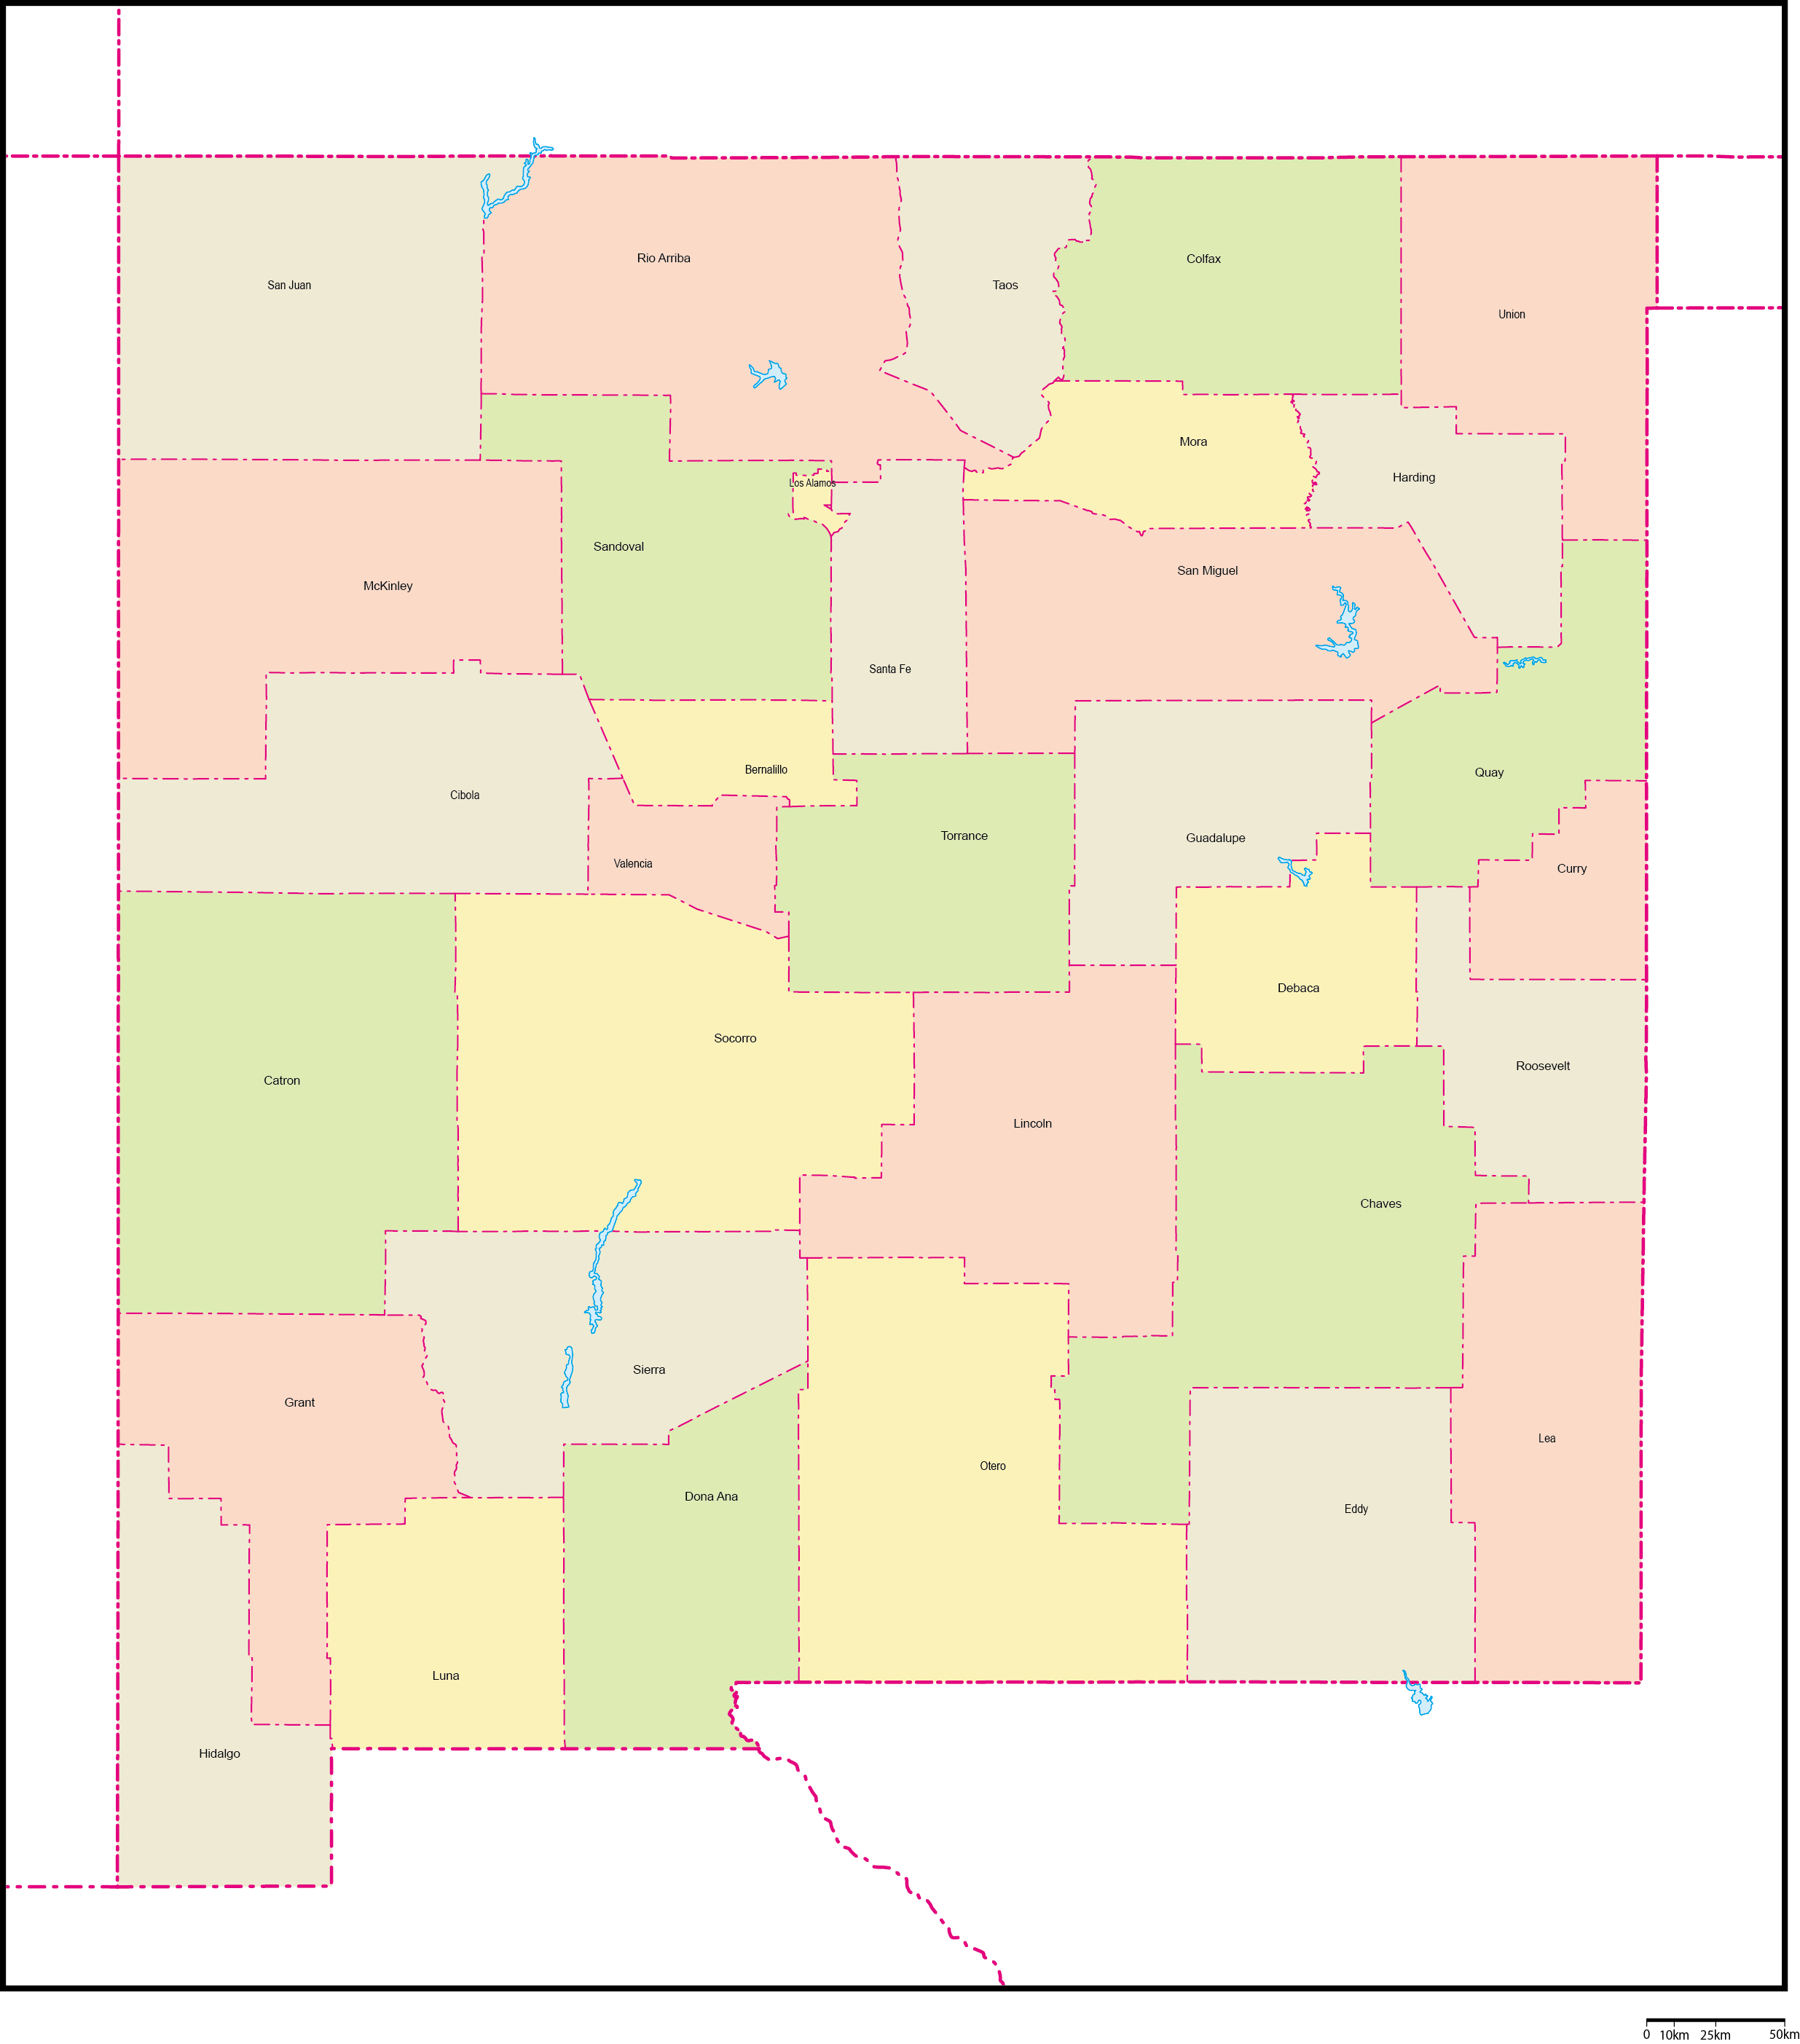 ニューメキシコ州郡色分け地図郡名あり(英語)フリーデータの画像